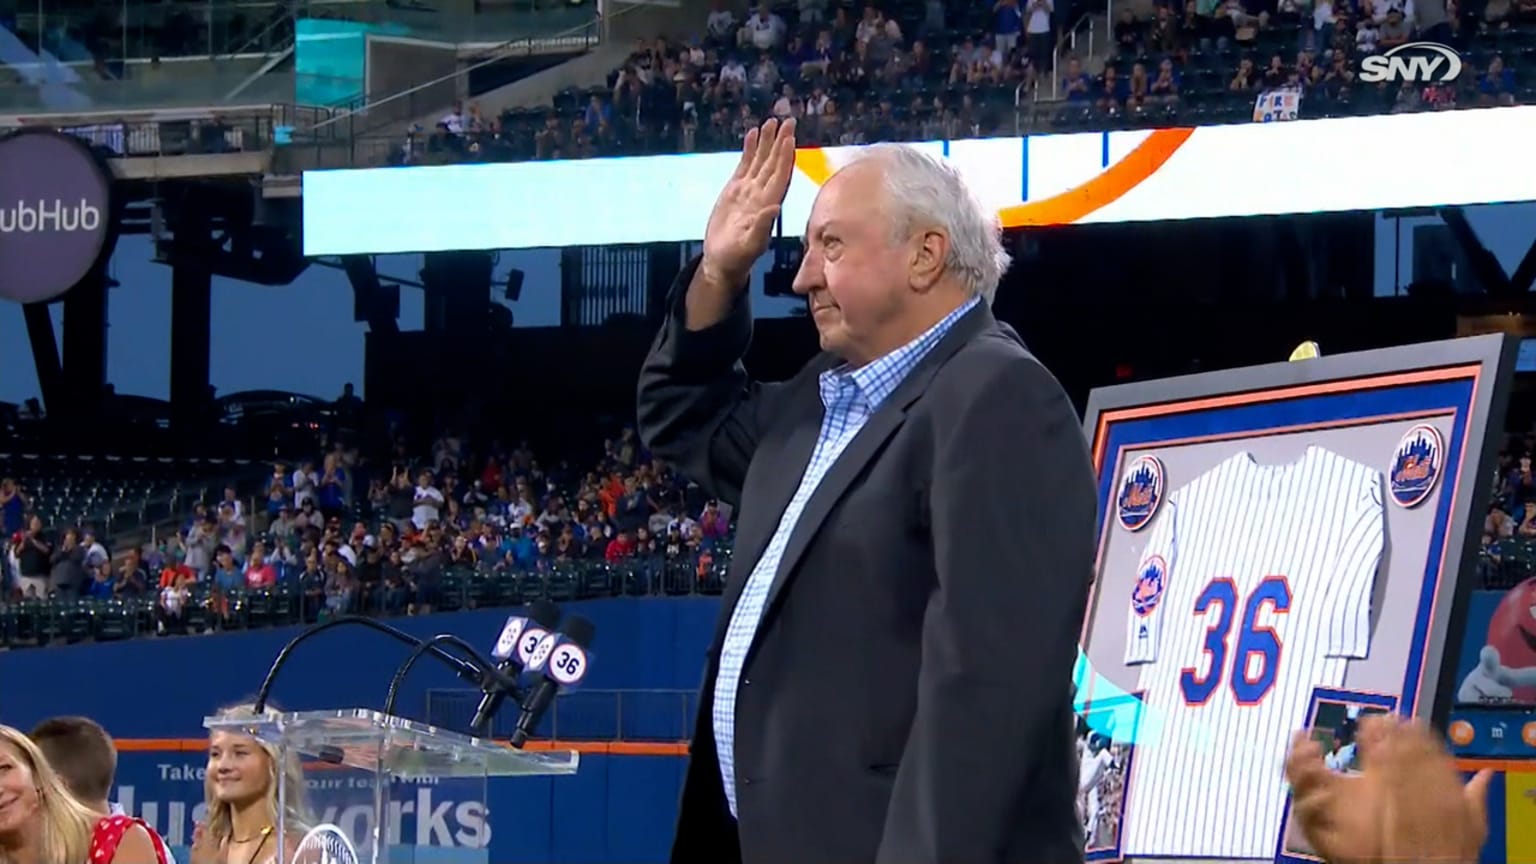 Mets retire Jerry Koosman's No. 36